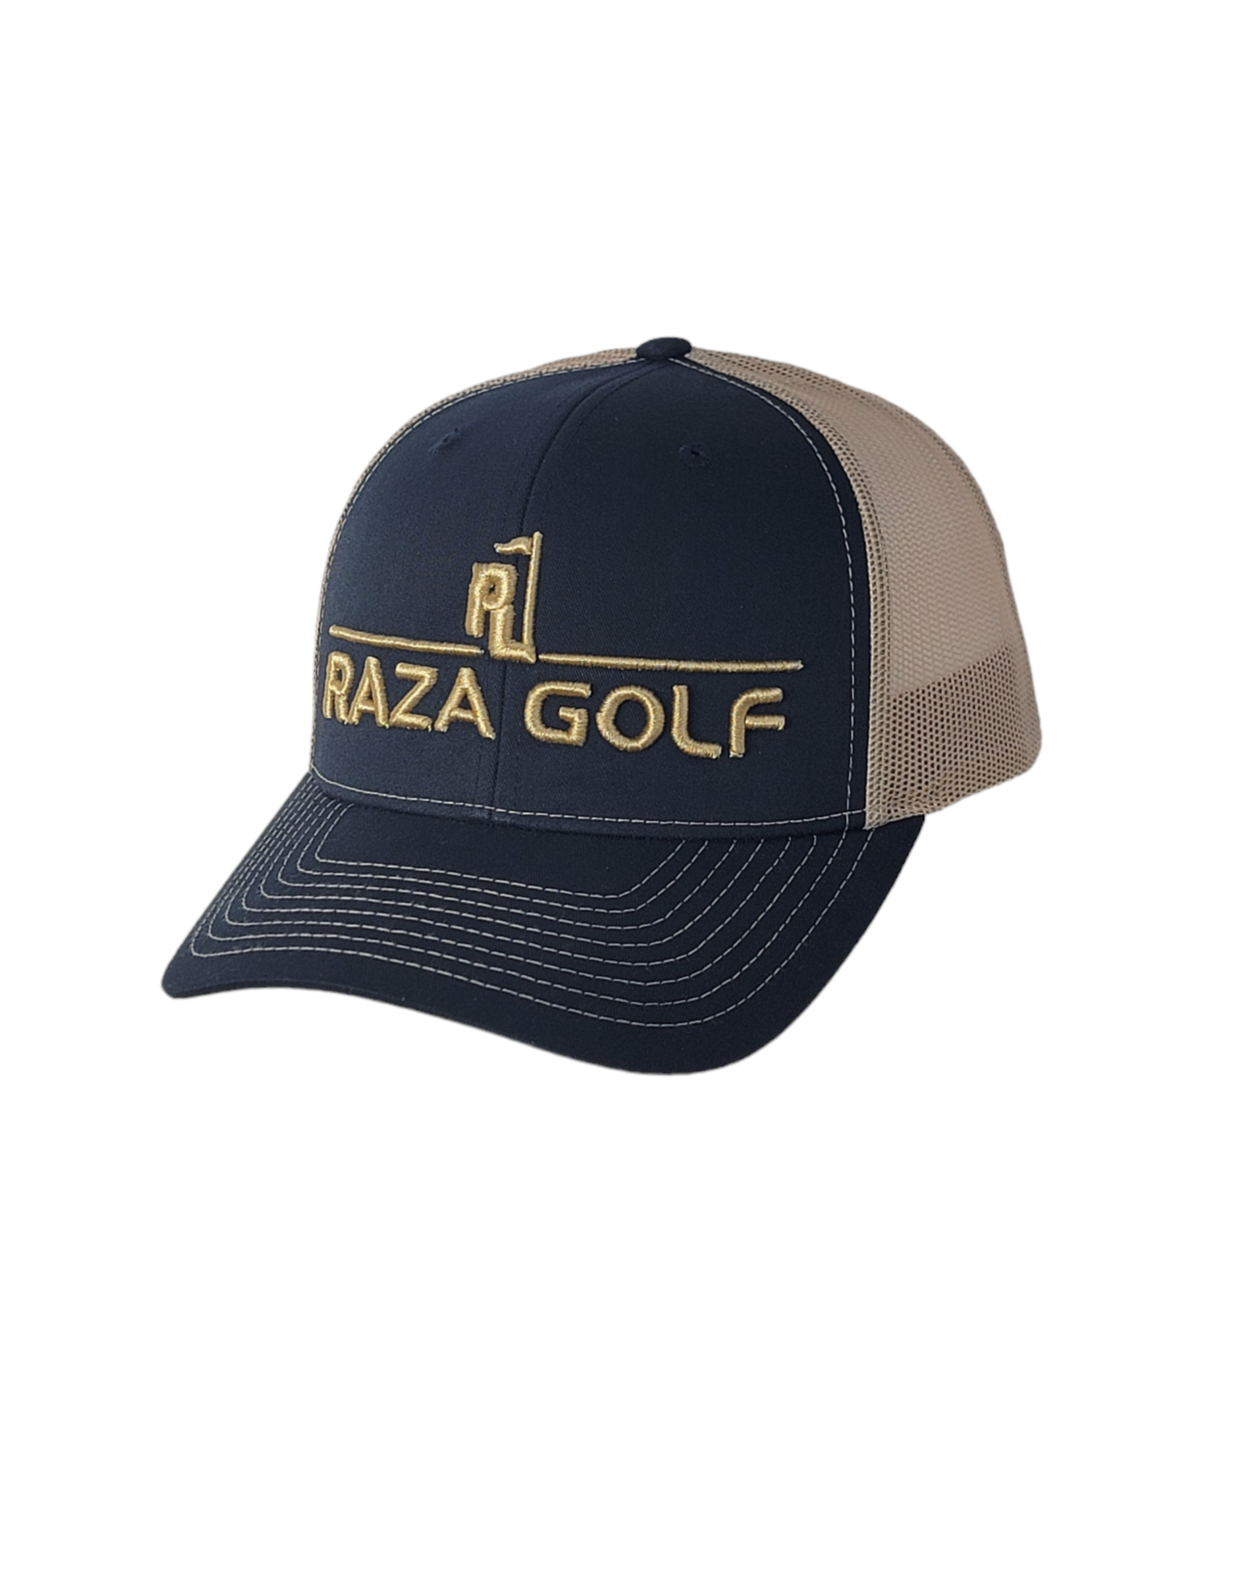 Raza Golf Navy/Khaki Linear Trucker Hat